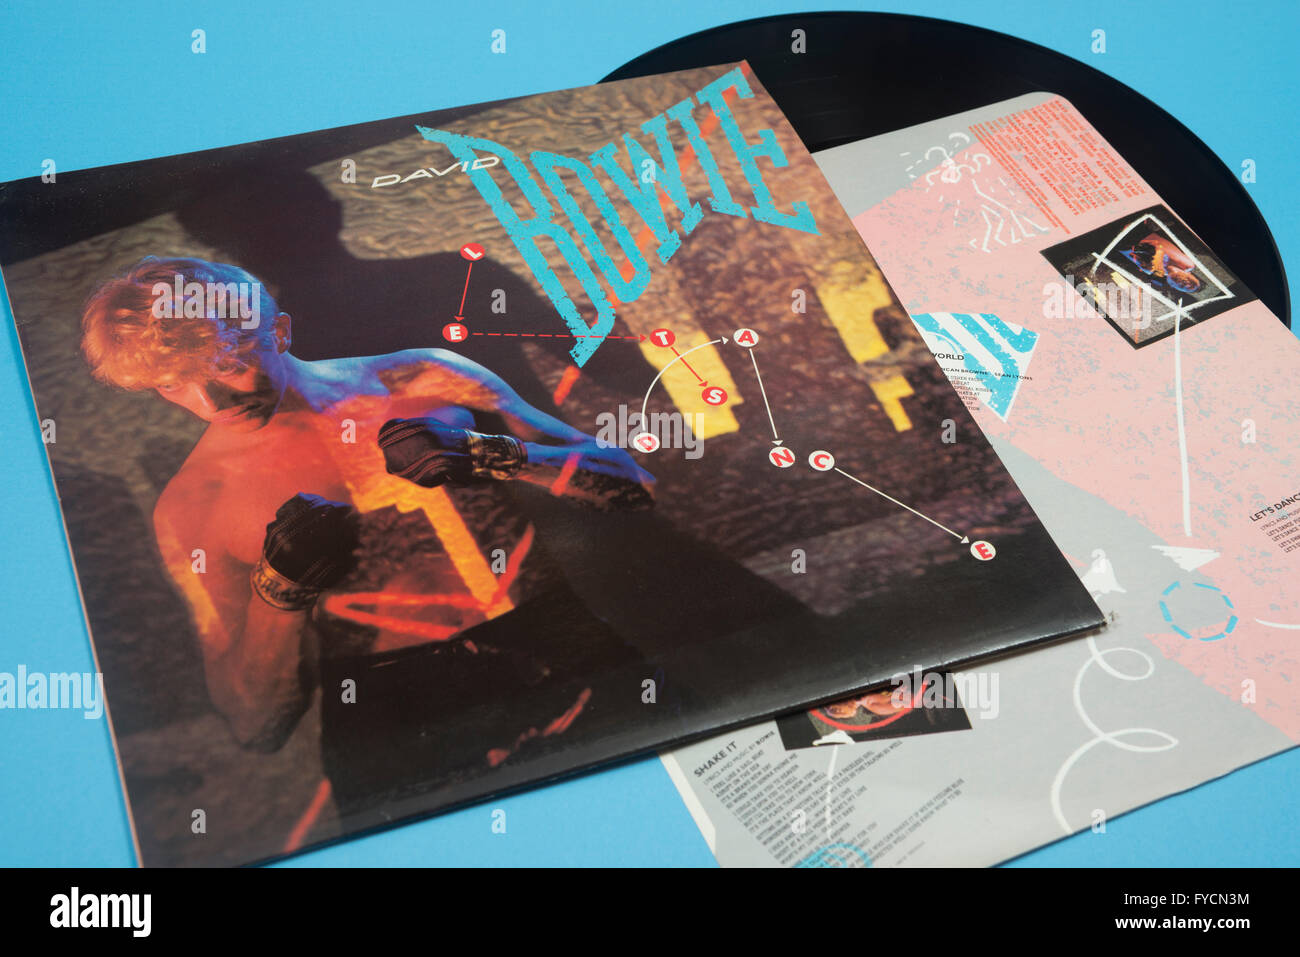 Let's Dance album sur vinyl de David Bowie avec manchon original artwork Banque D'Images